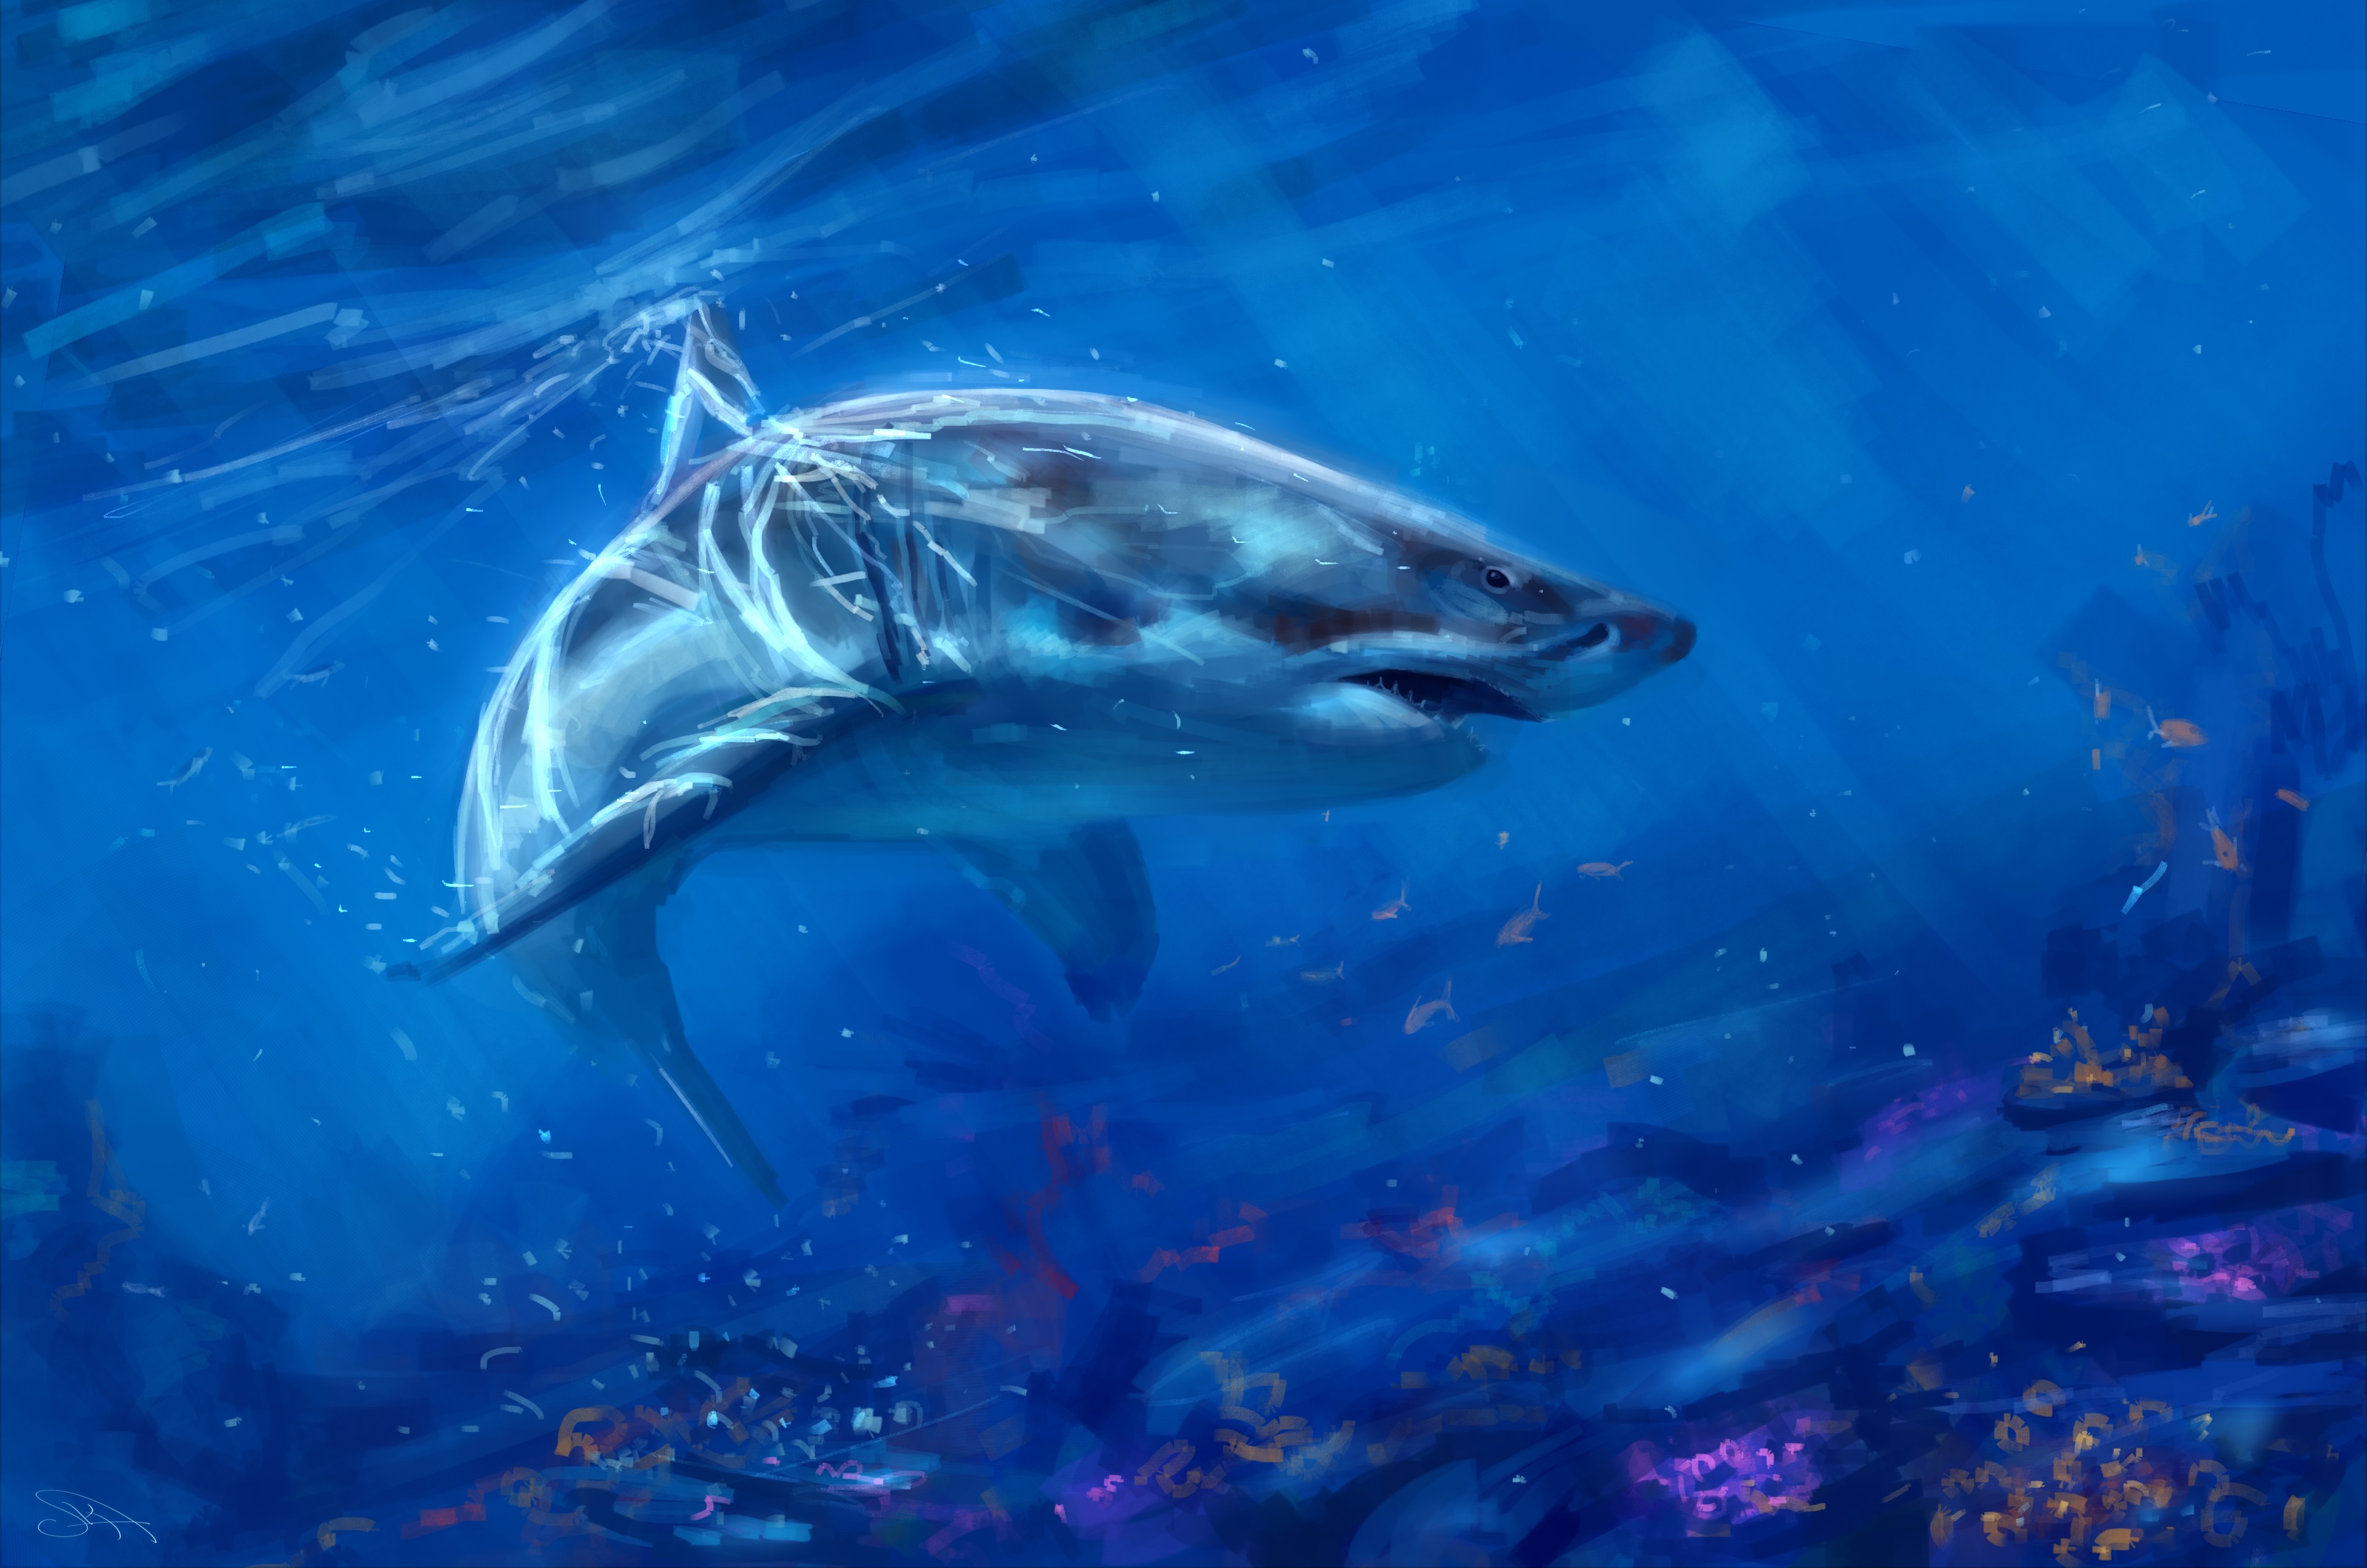 Descarga gratuita de fondo de pantalla para móvil de Animales, Artístico, Tiburón, Submarina.